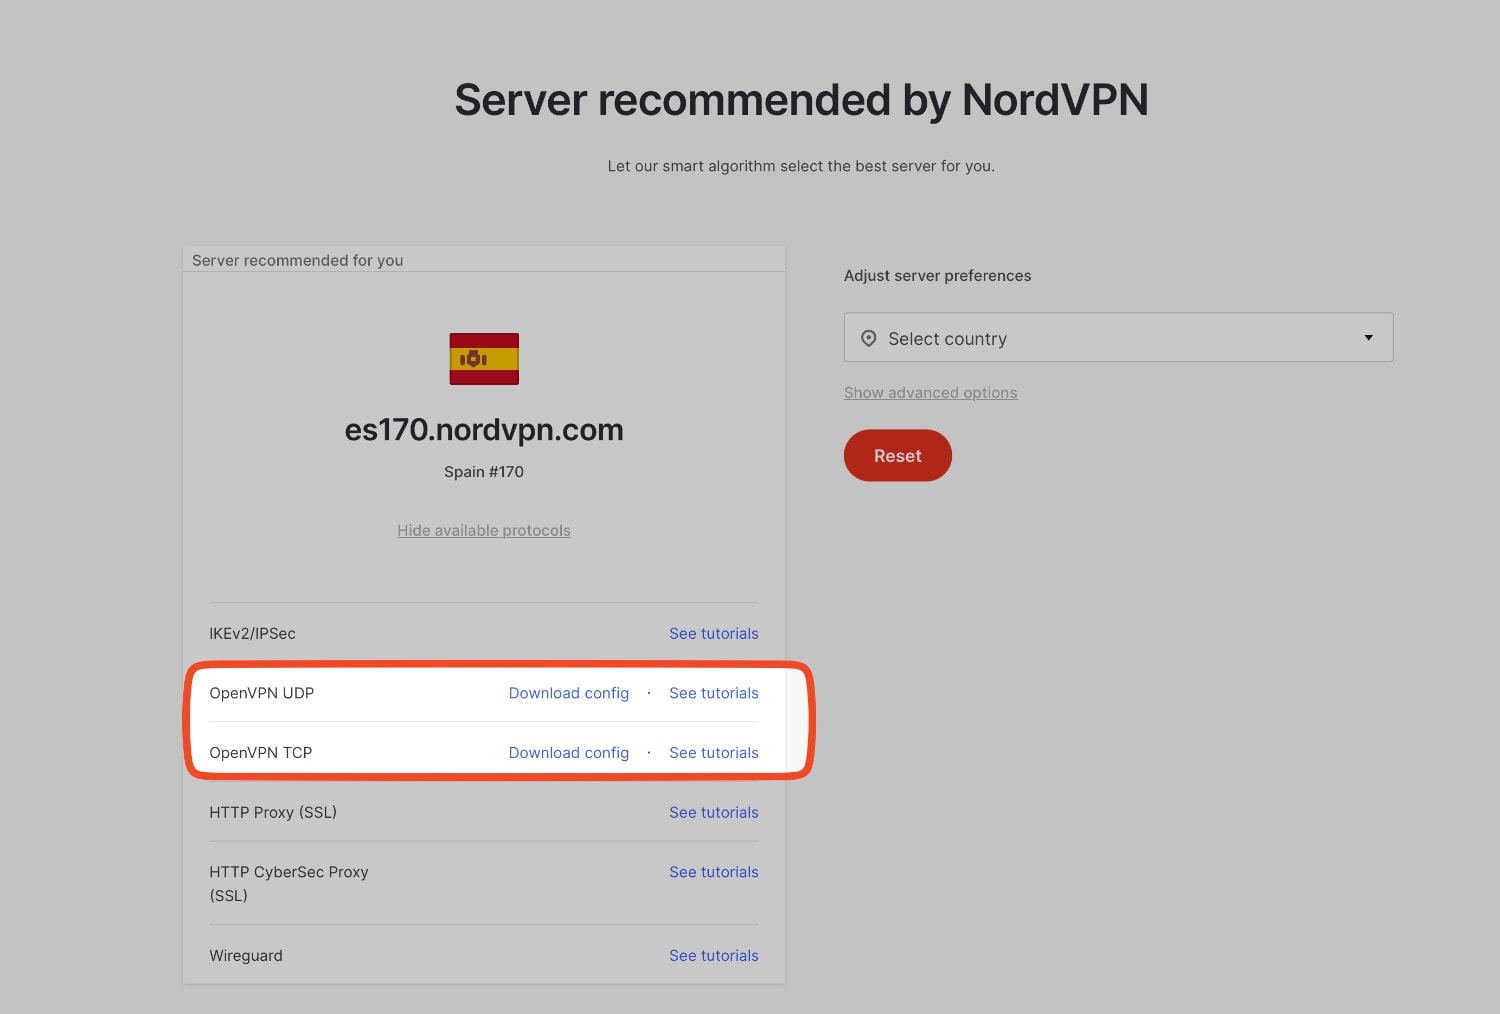 Descargar el archivo de configuración .ovpn de alguno de los servidores de NordVPN.